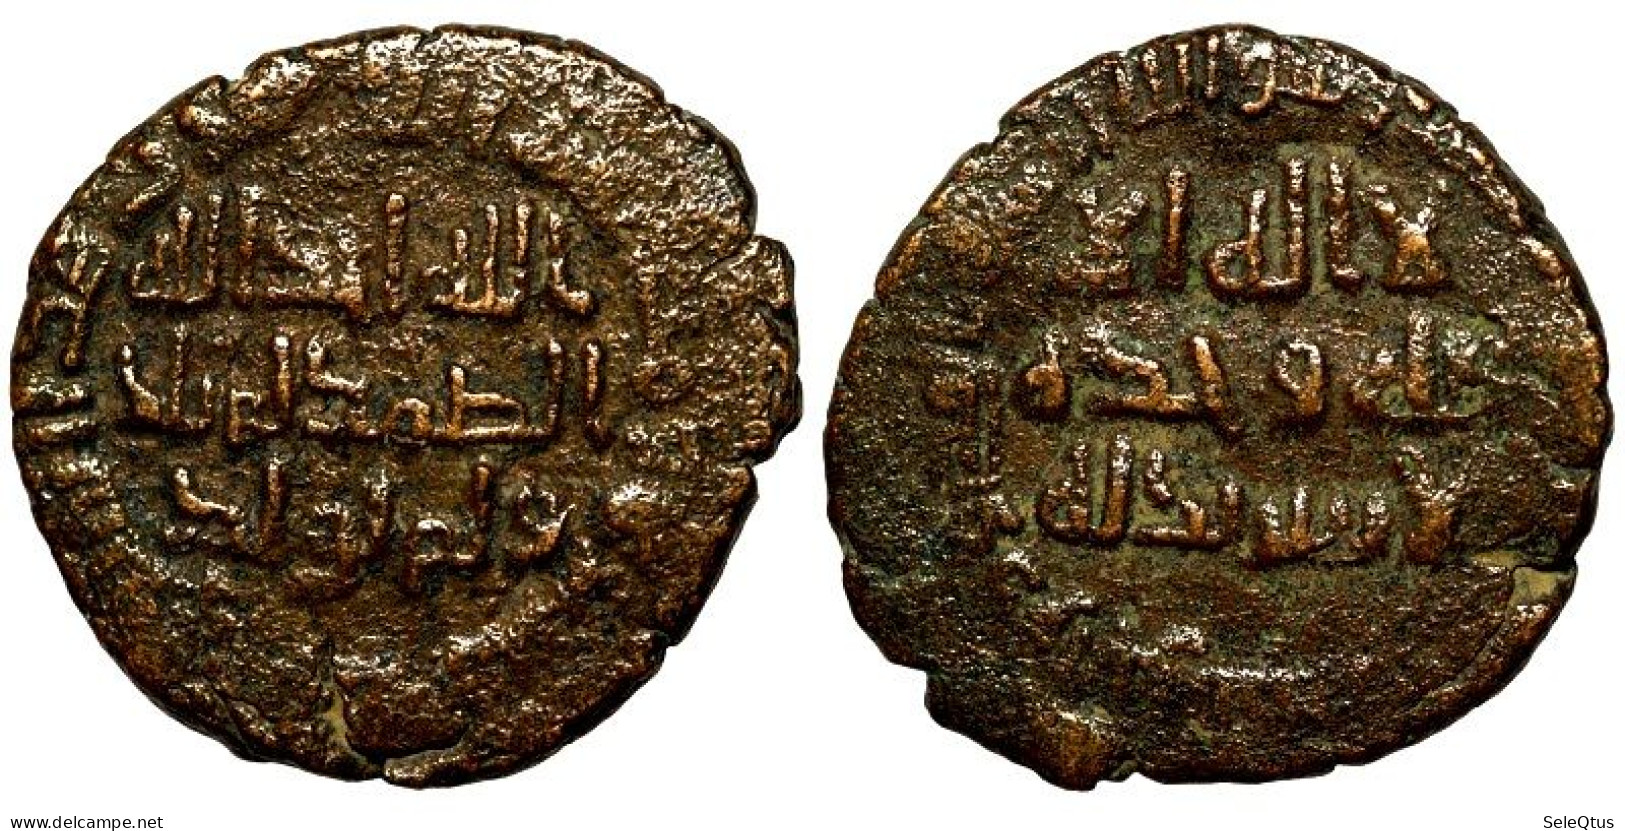 Monedas Antiguas - Ancient Coins (00113-002-1542) - Islamische Münzen